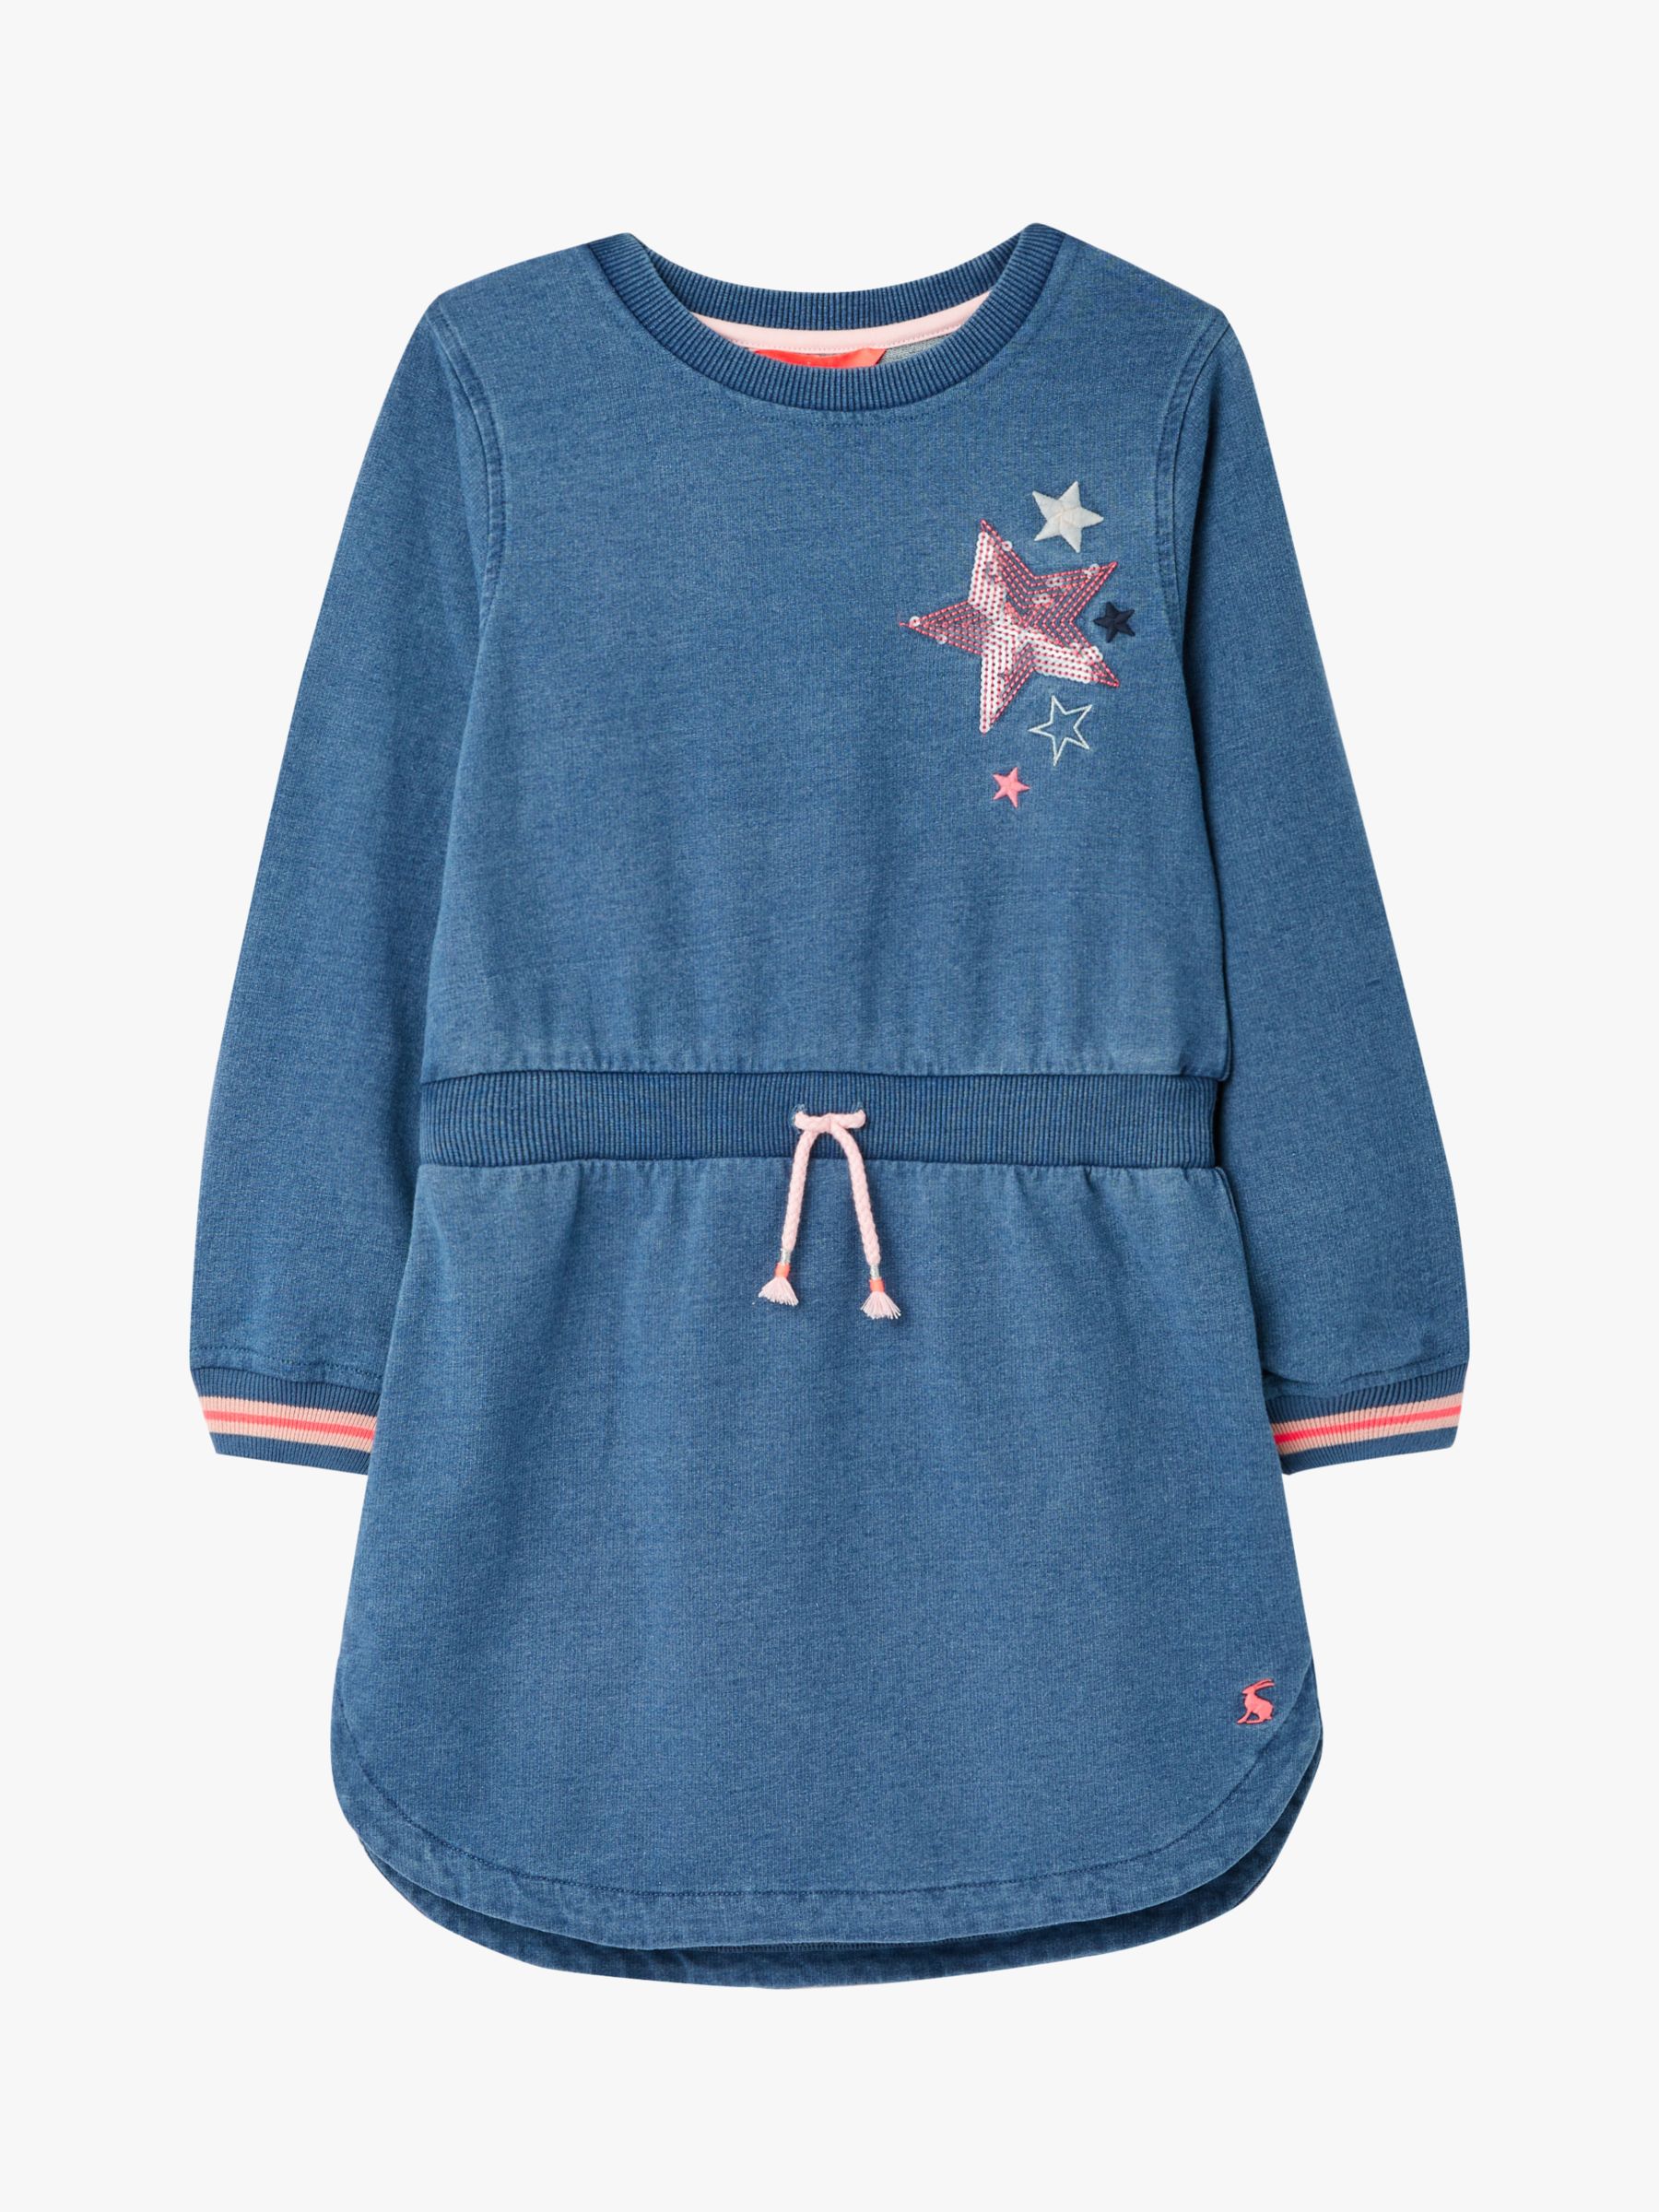 Image of Little Joule Girls Millie Sweatshirt Dress Denim Blue